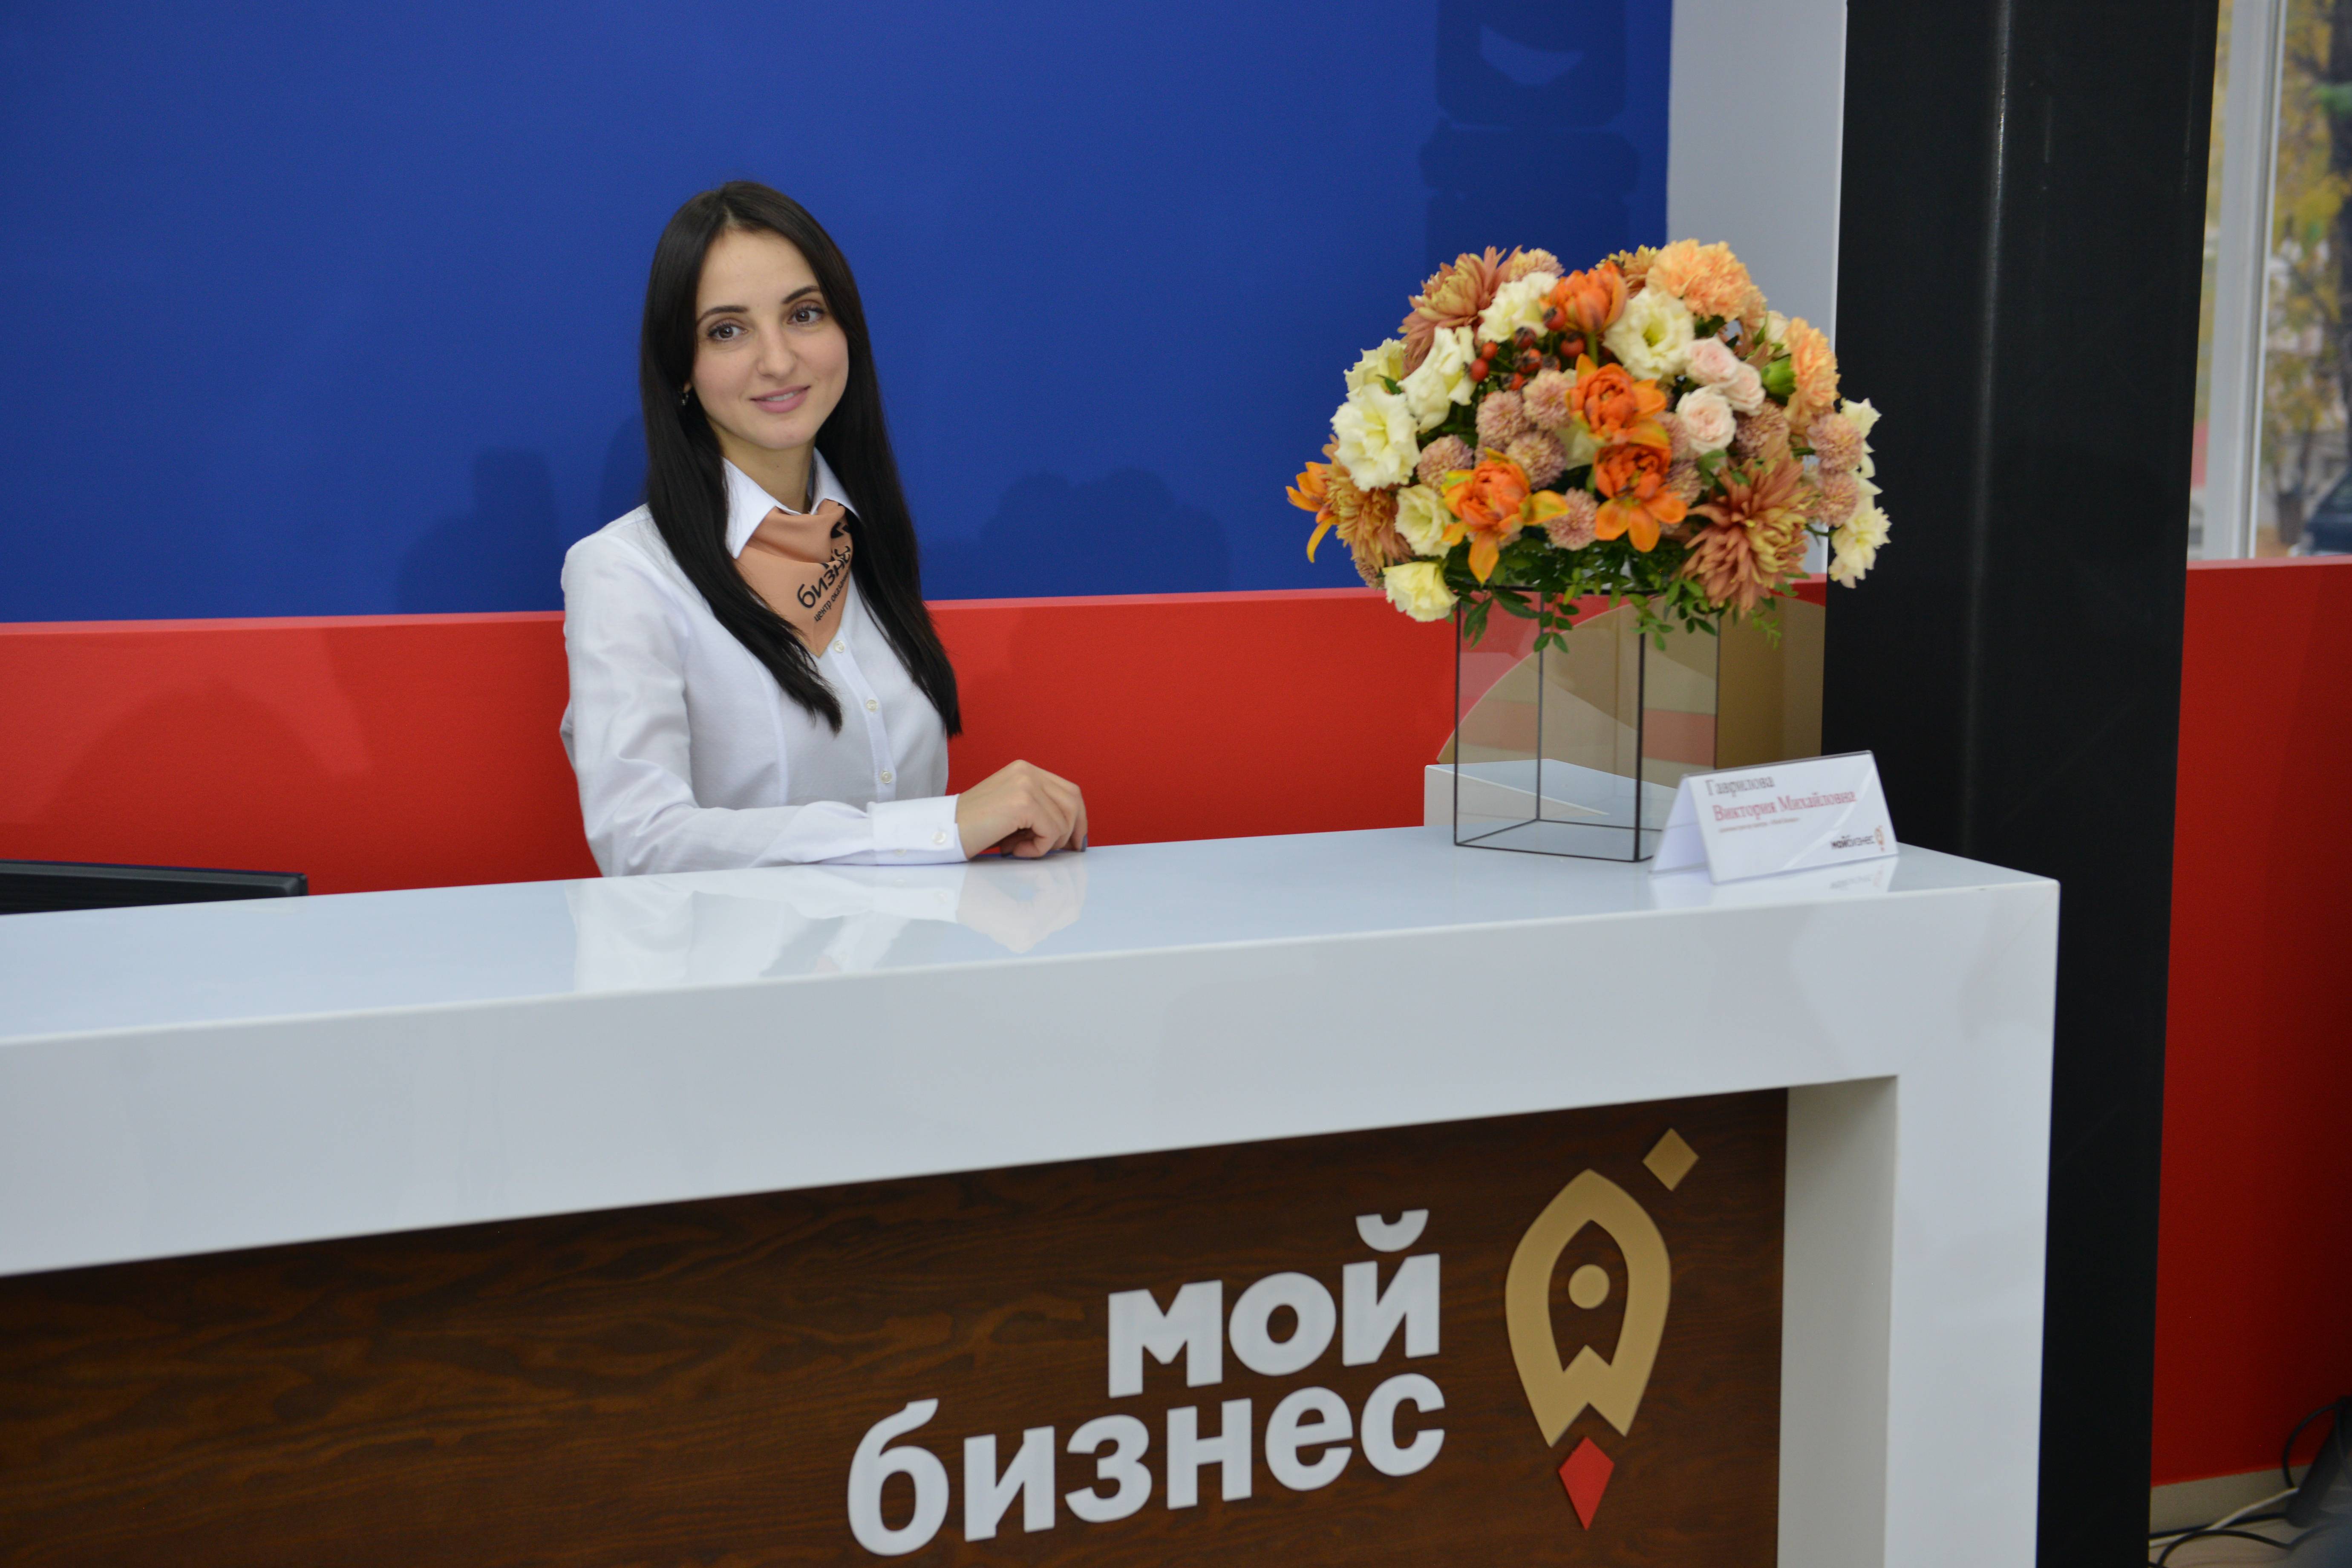 Ключевой объект нацпроекта по поддержке предпринимательства – центр «Мой бизнес» открывается в Таганроге 7 ноября